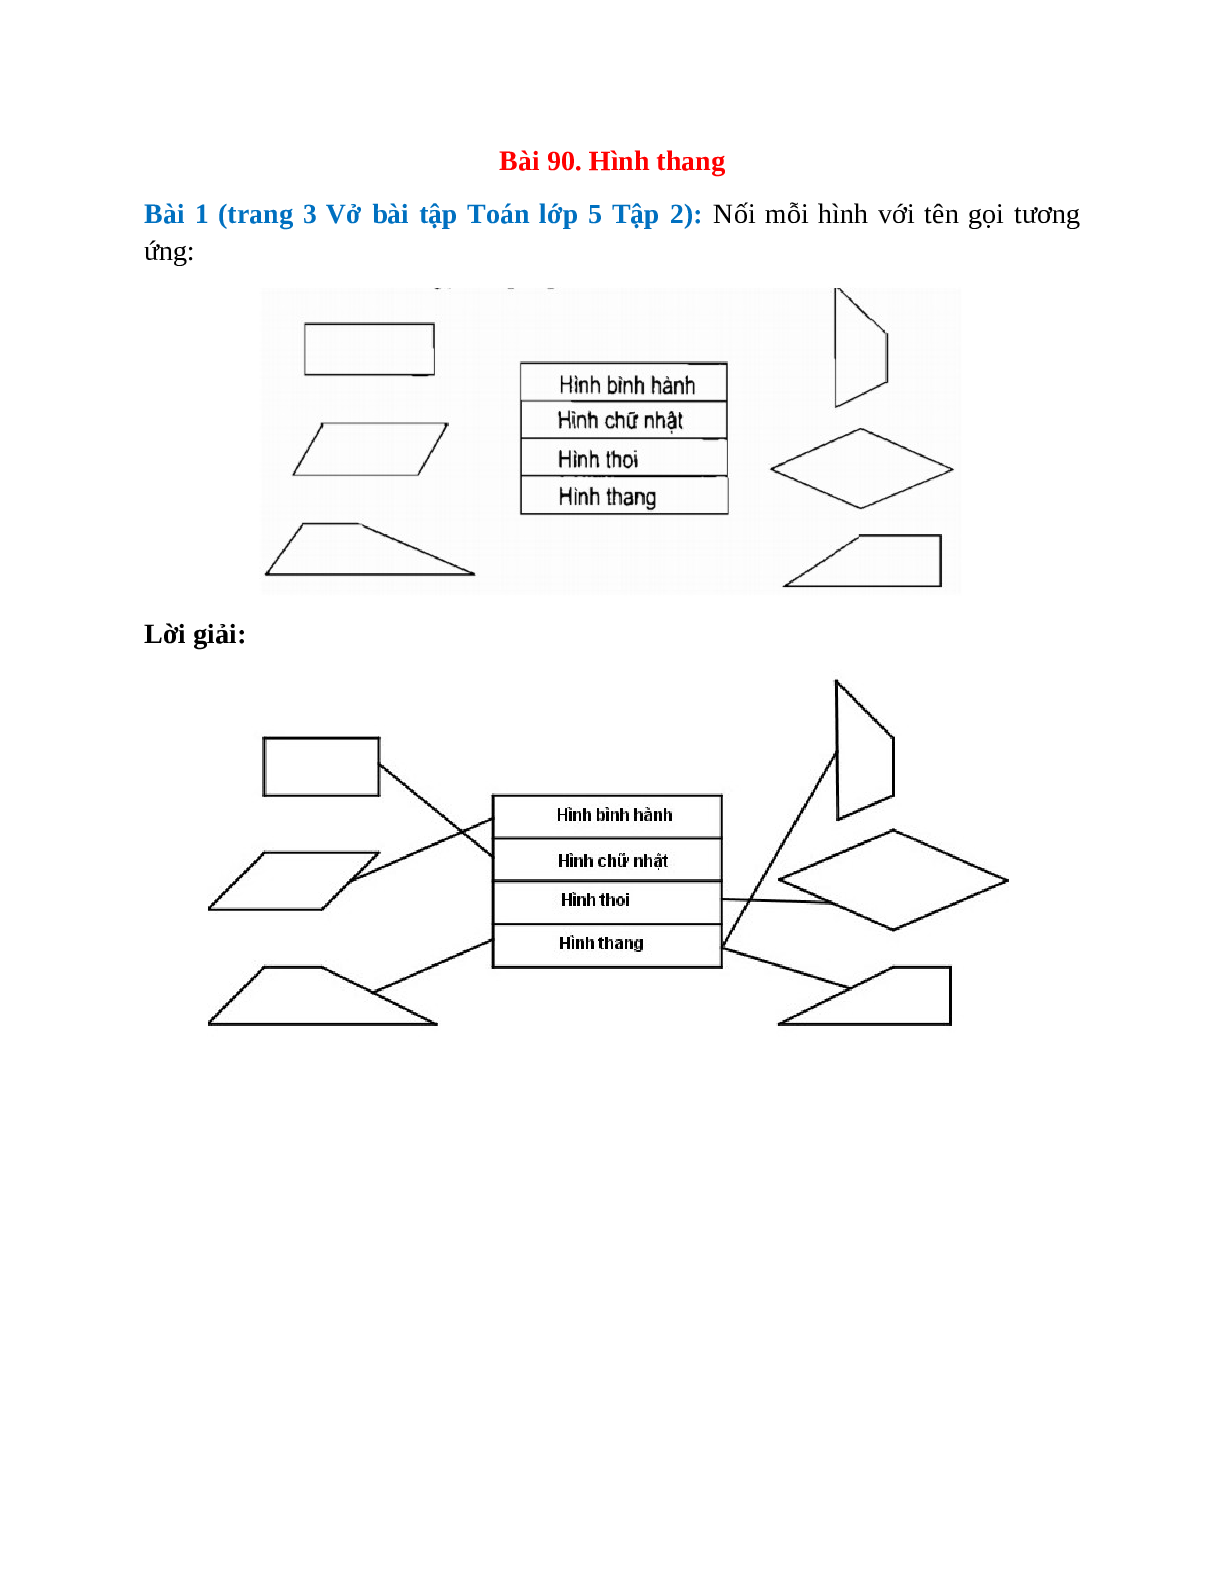 Nối mỗi hình với tên gọi tương ứng Bài 1 trang 3 Vở bài tập Toán lớp 5 (trang 1)